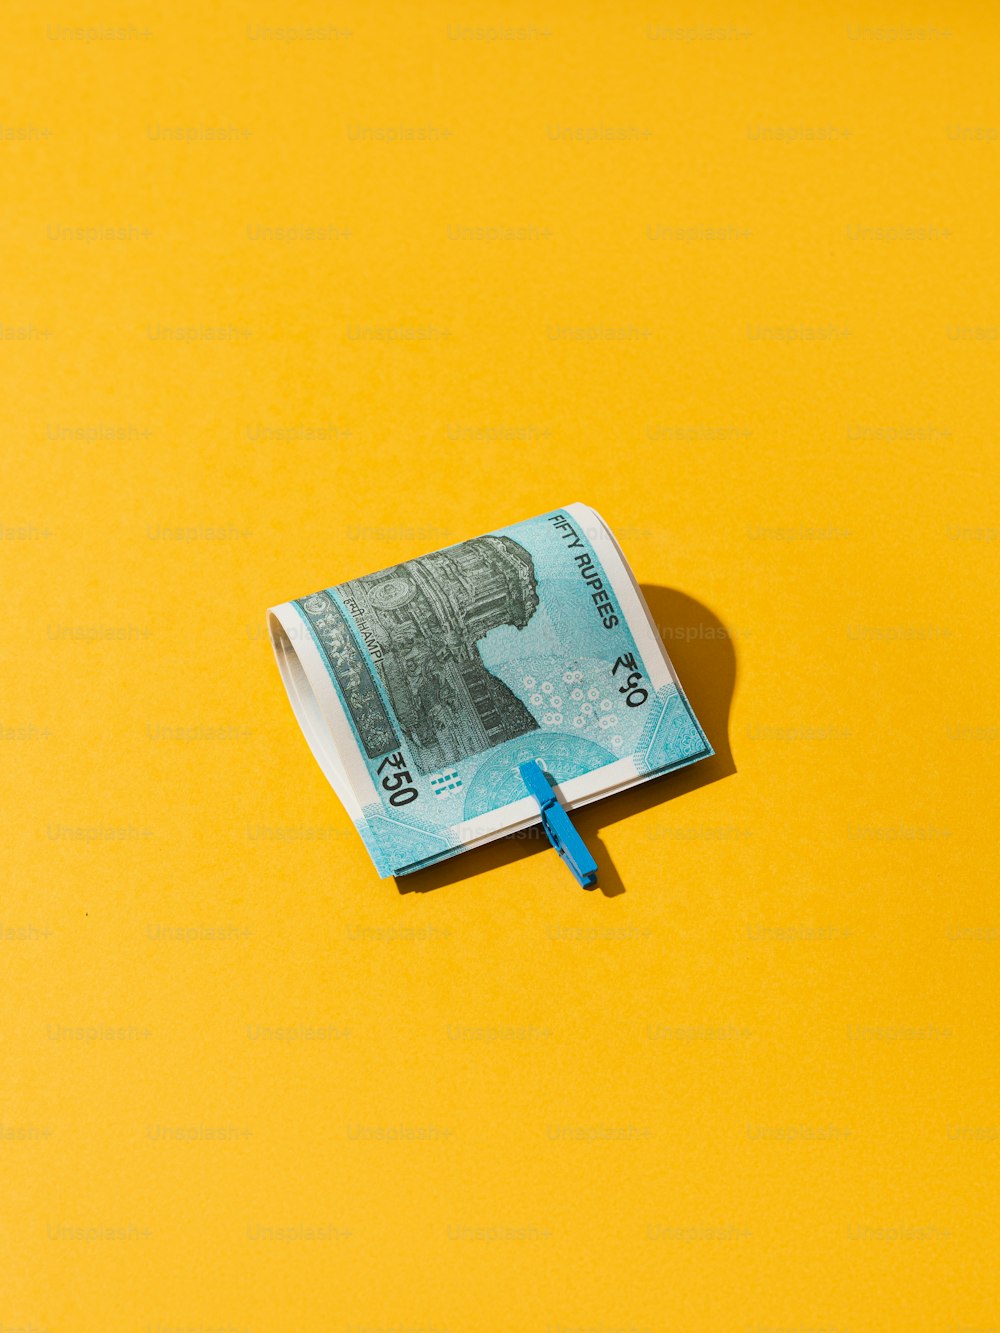 un billet de cent dollars enroulé posé sur une surface jaune